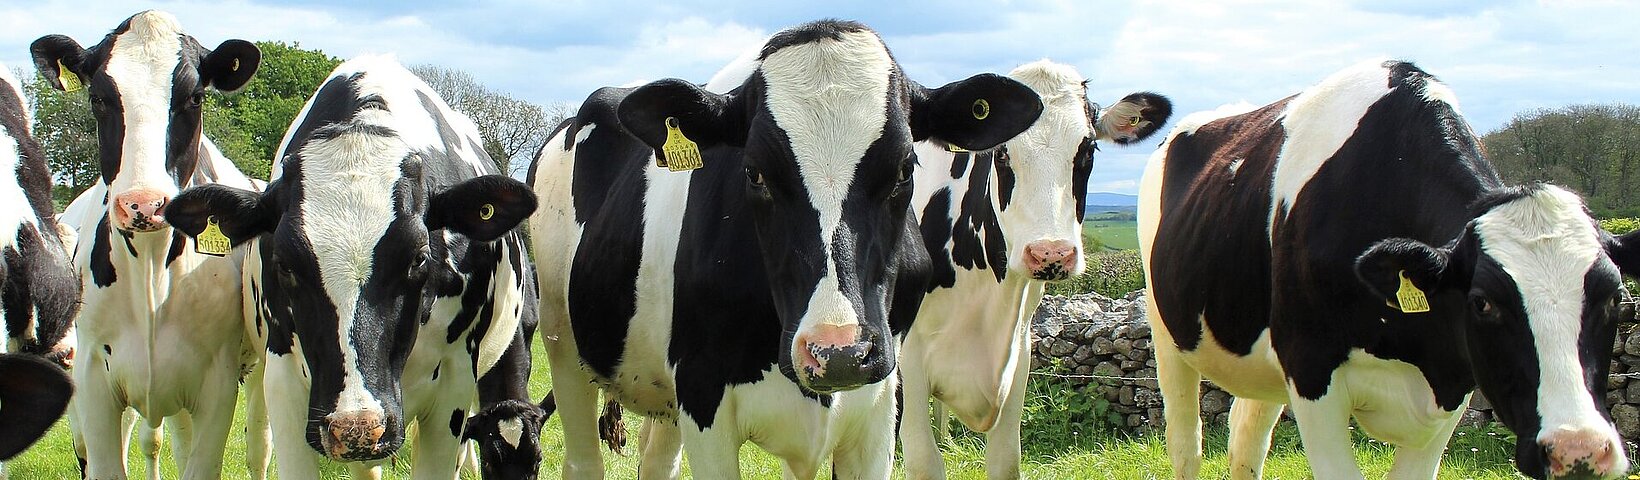 Holstein Cattle 